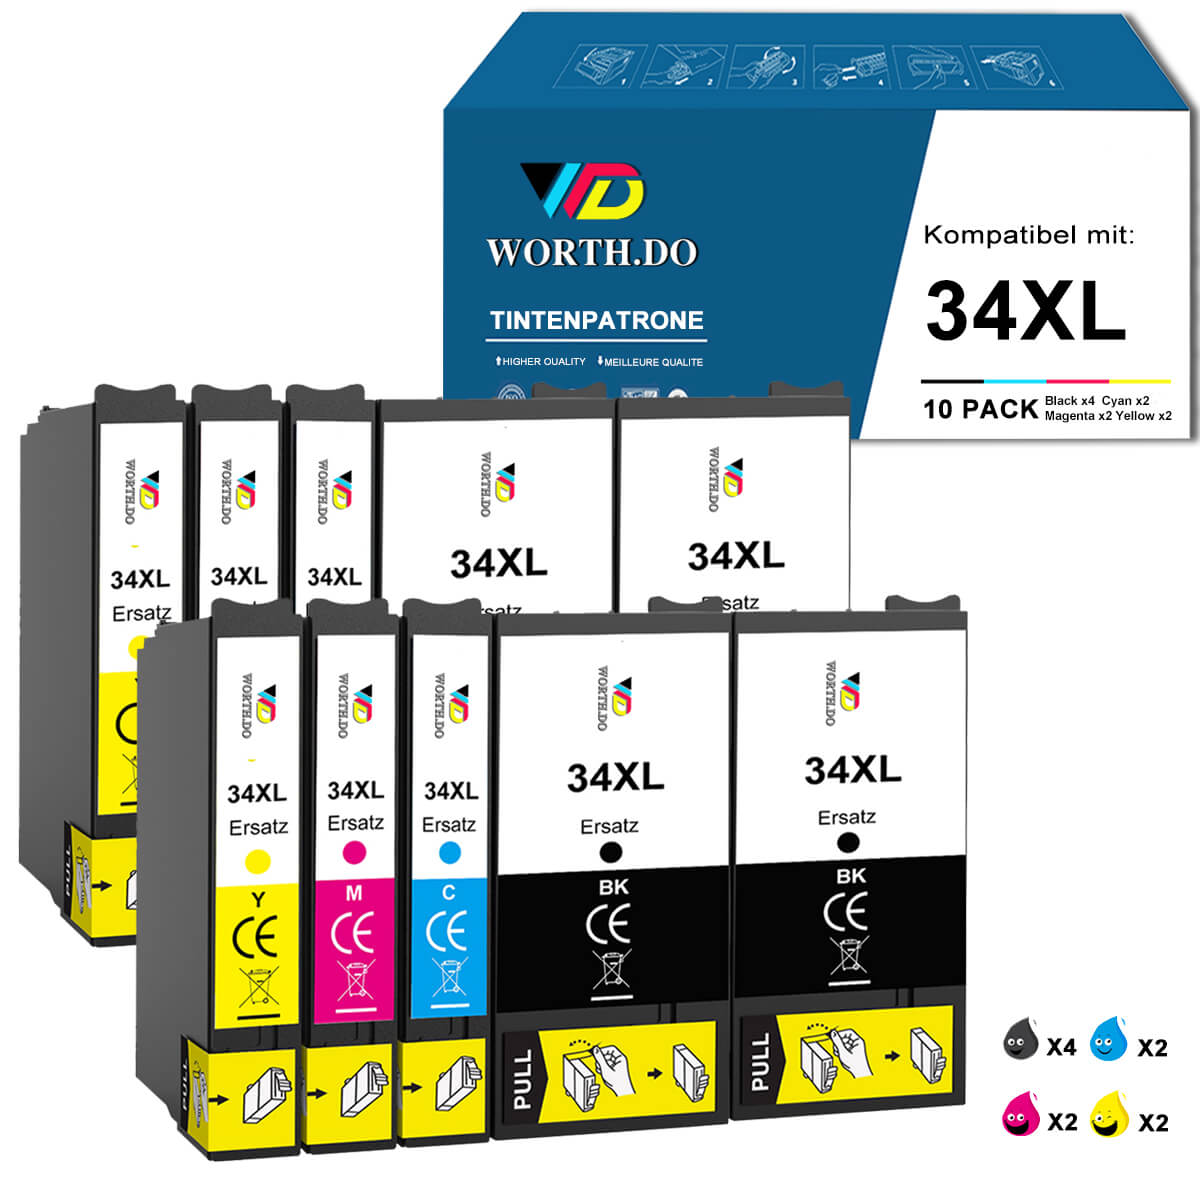    worthdo-Epson-Druckerpatronen-34xl-value-pack